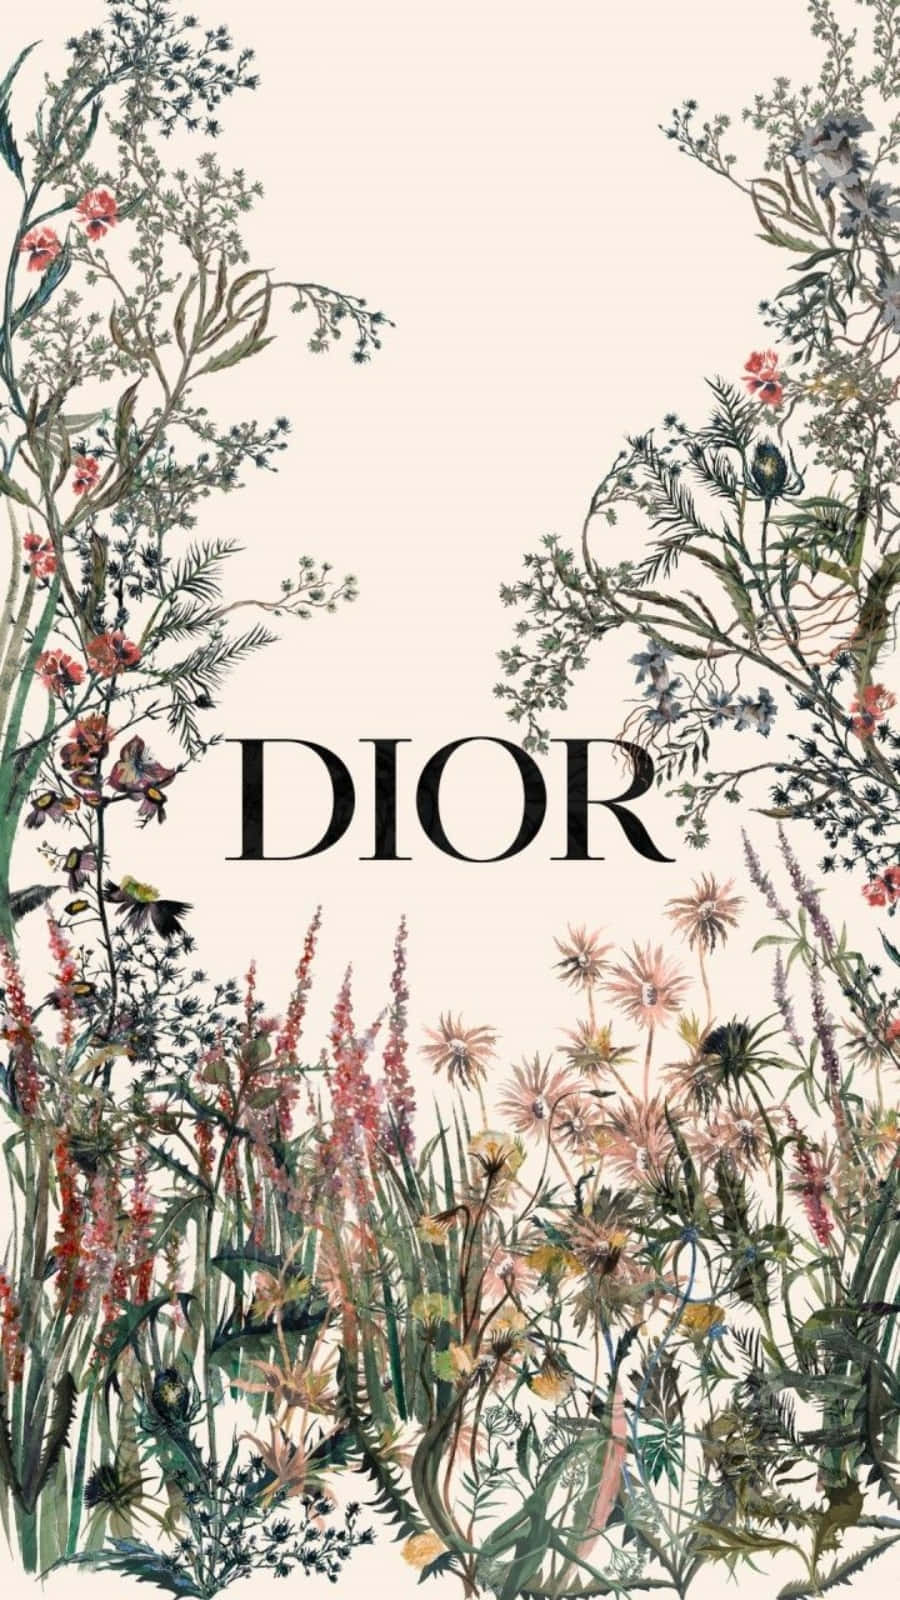 ¡elevatus Conjuntos Con Un Toque De Lujo Con Este Impresionante Bolso De La Casa De Dior!